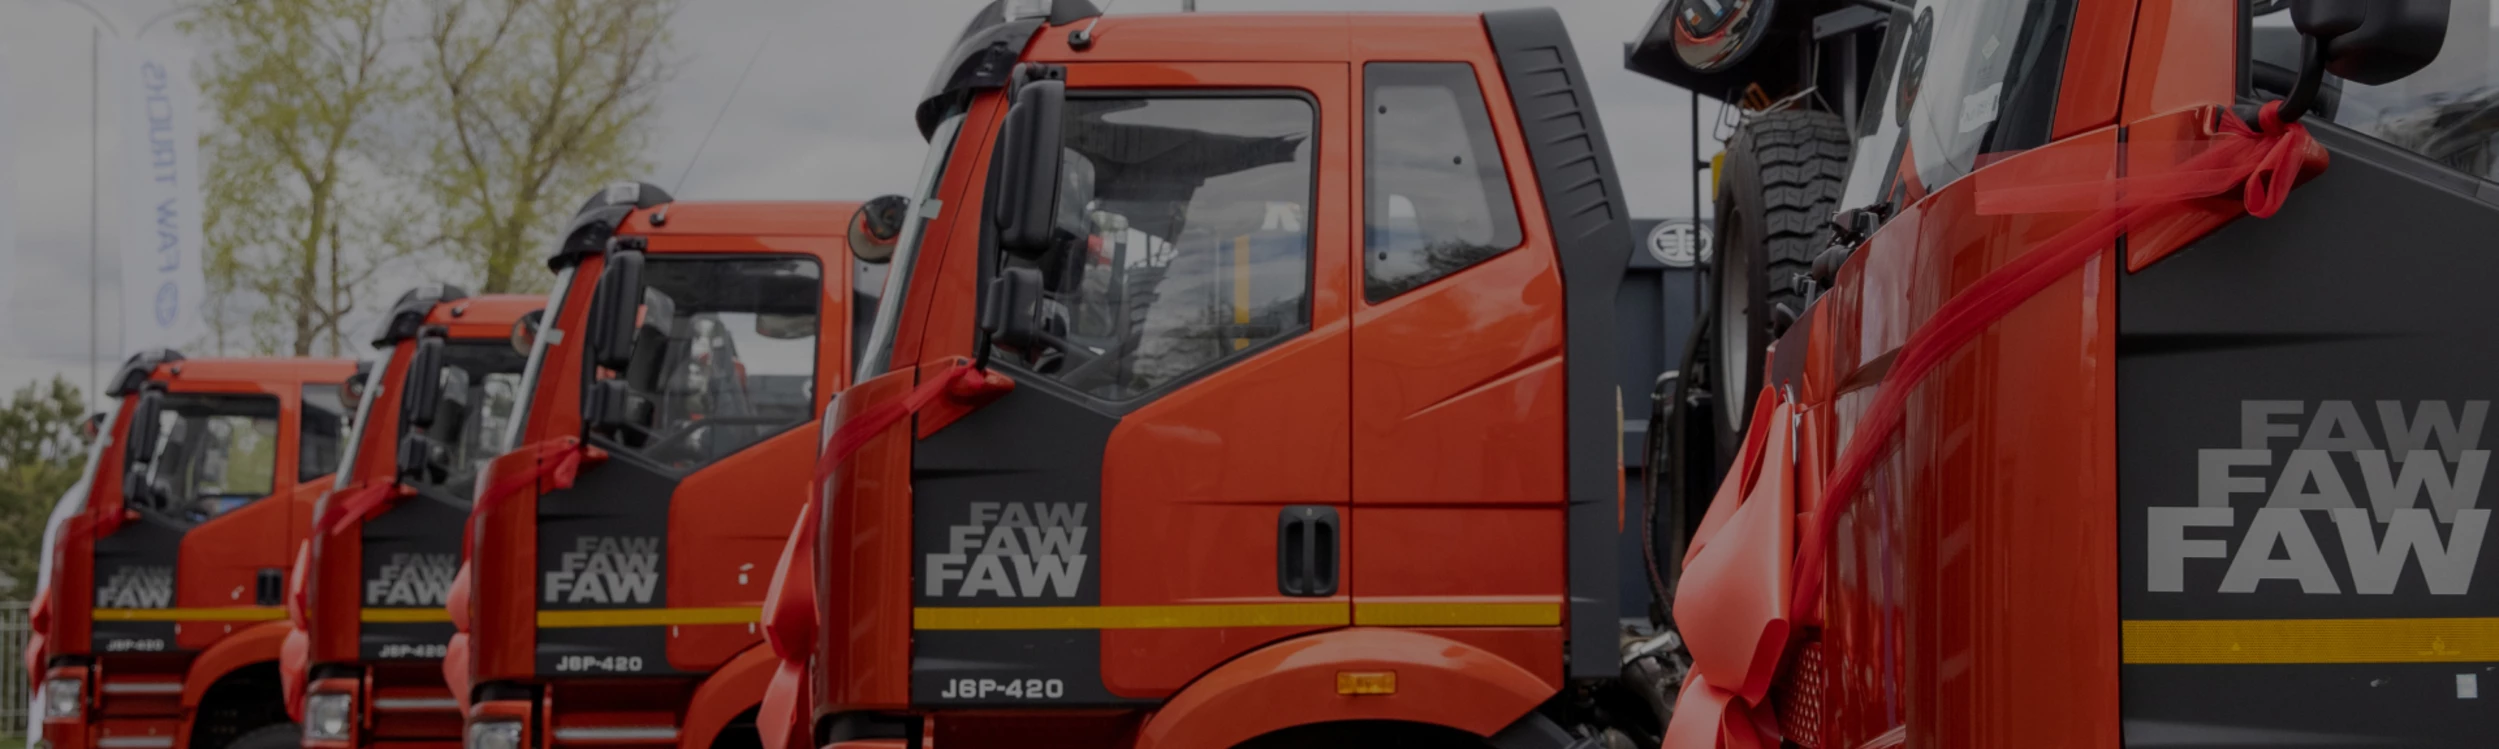 FAW Trucks - выгодные лизинговые программы от партнеров.